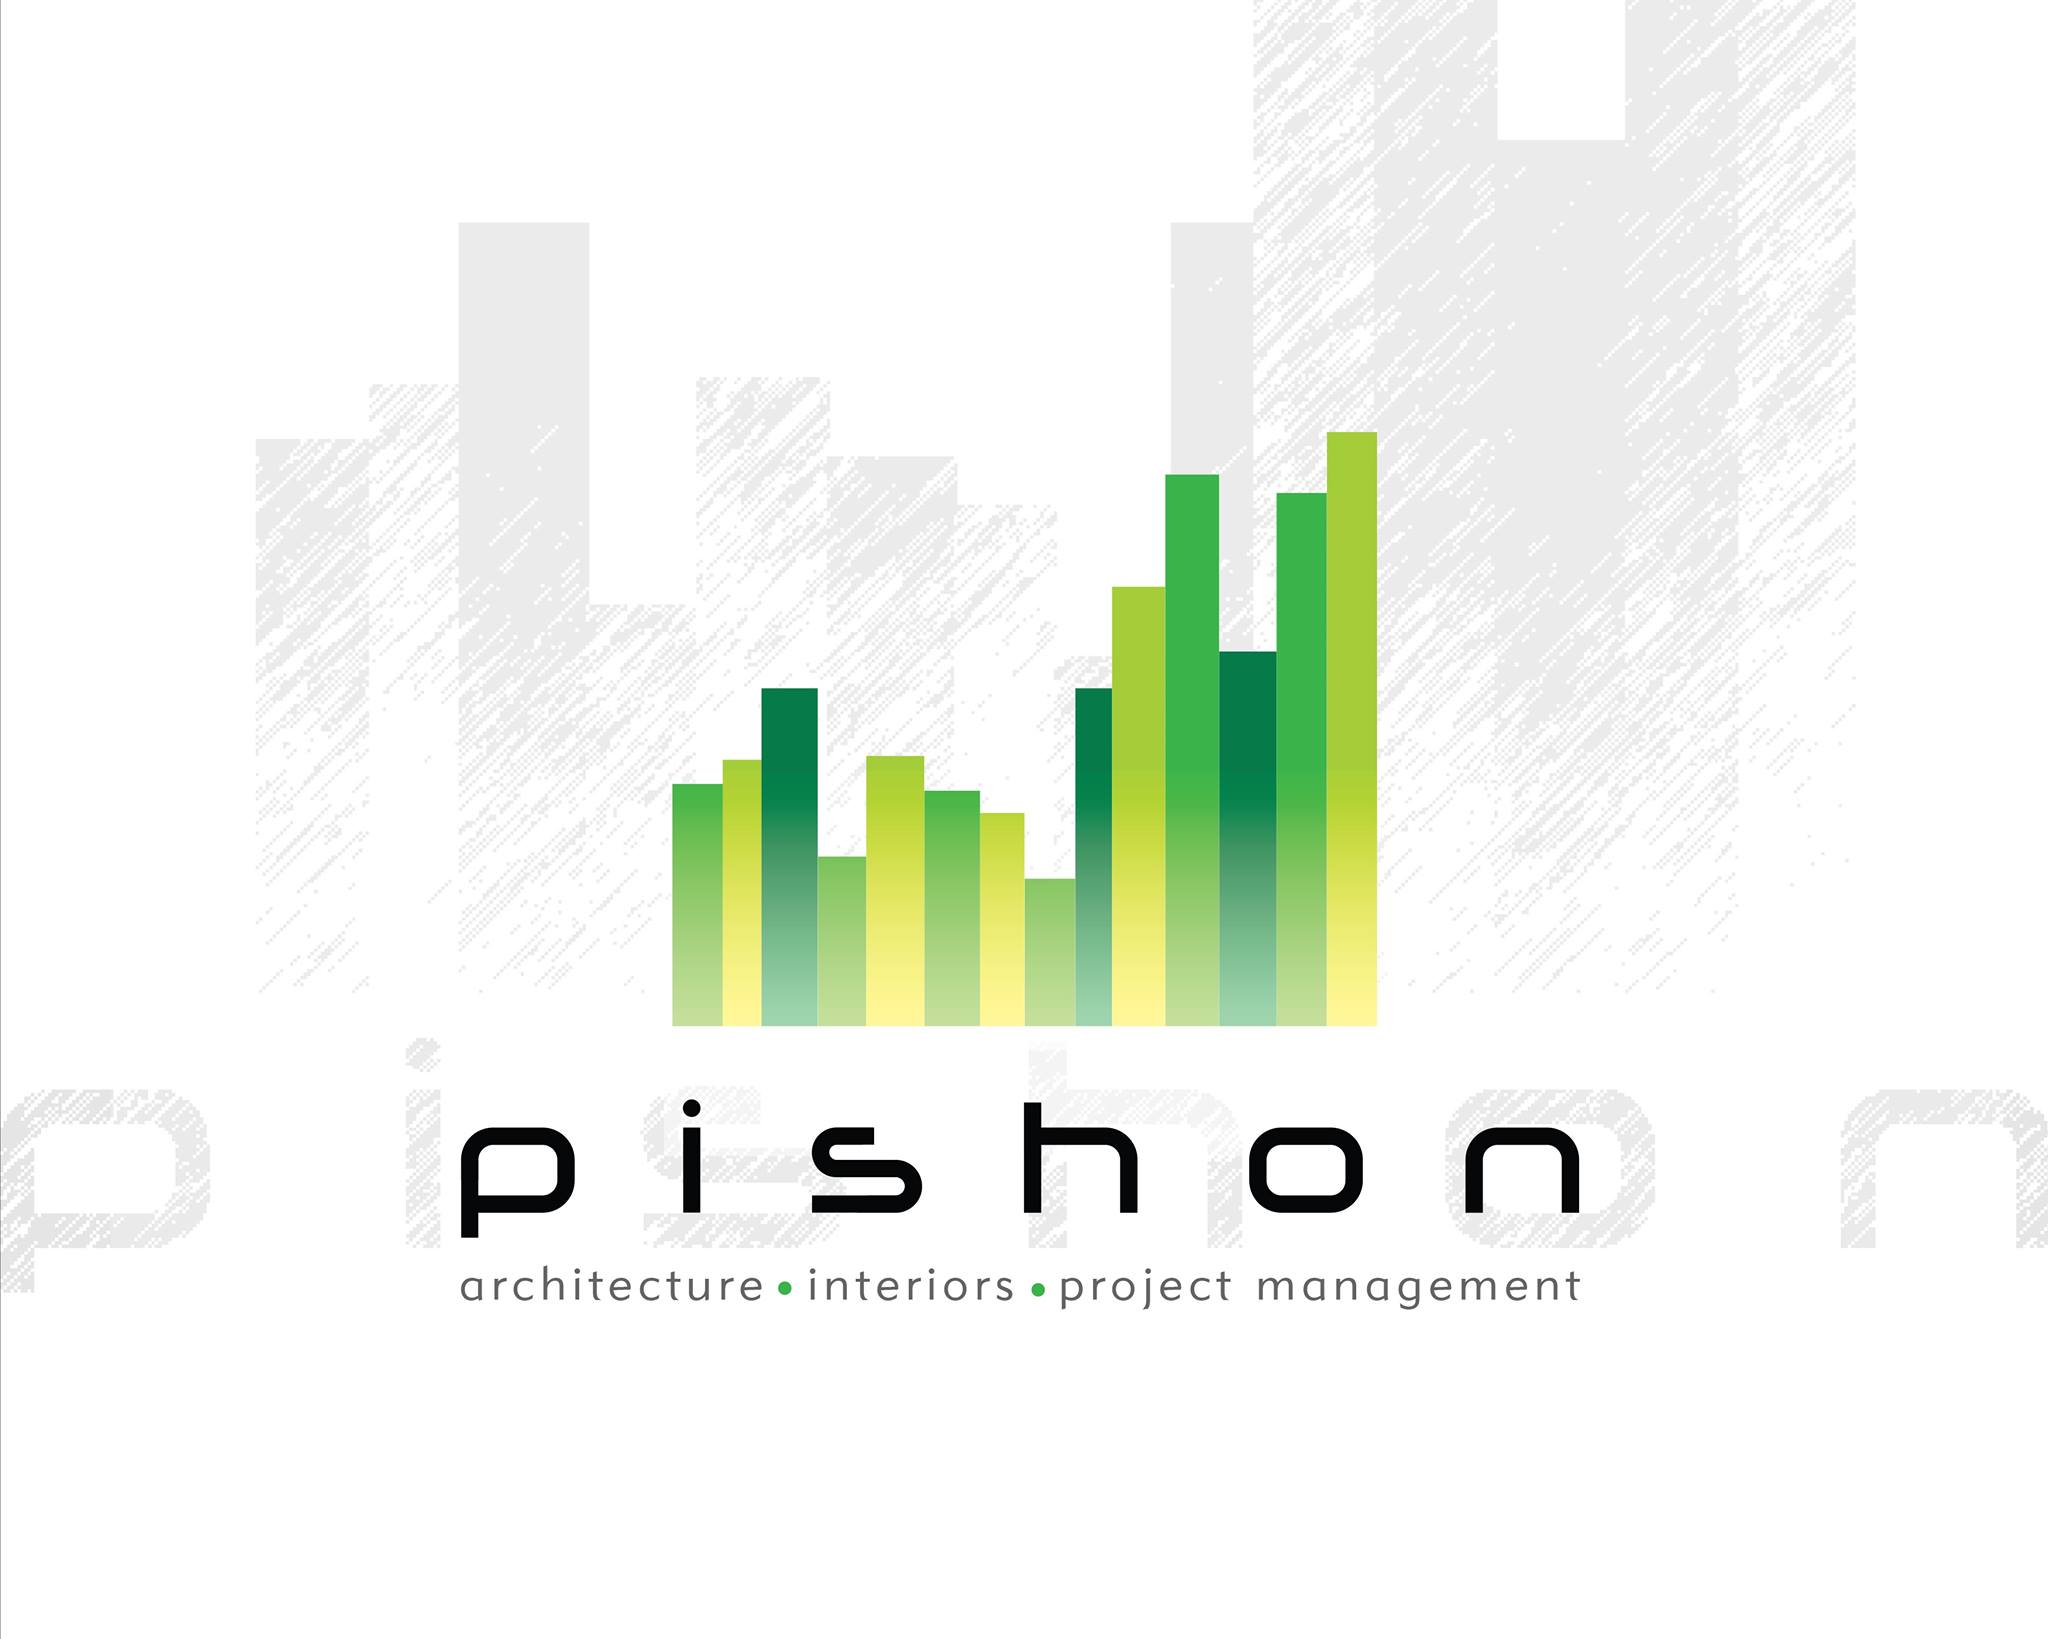 Pishon Designs|Legal Services|Professional Services